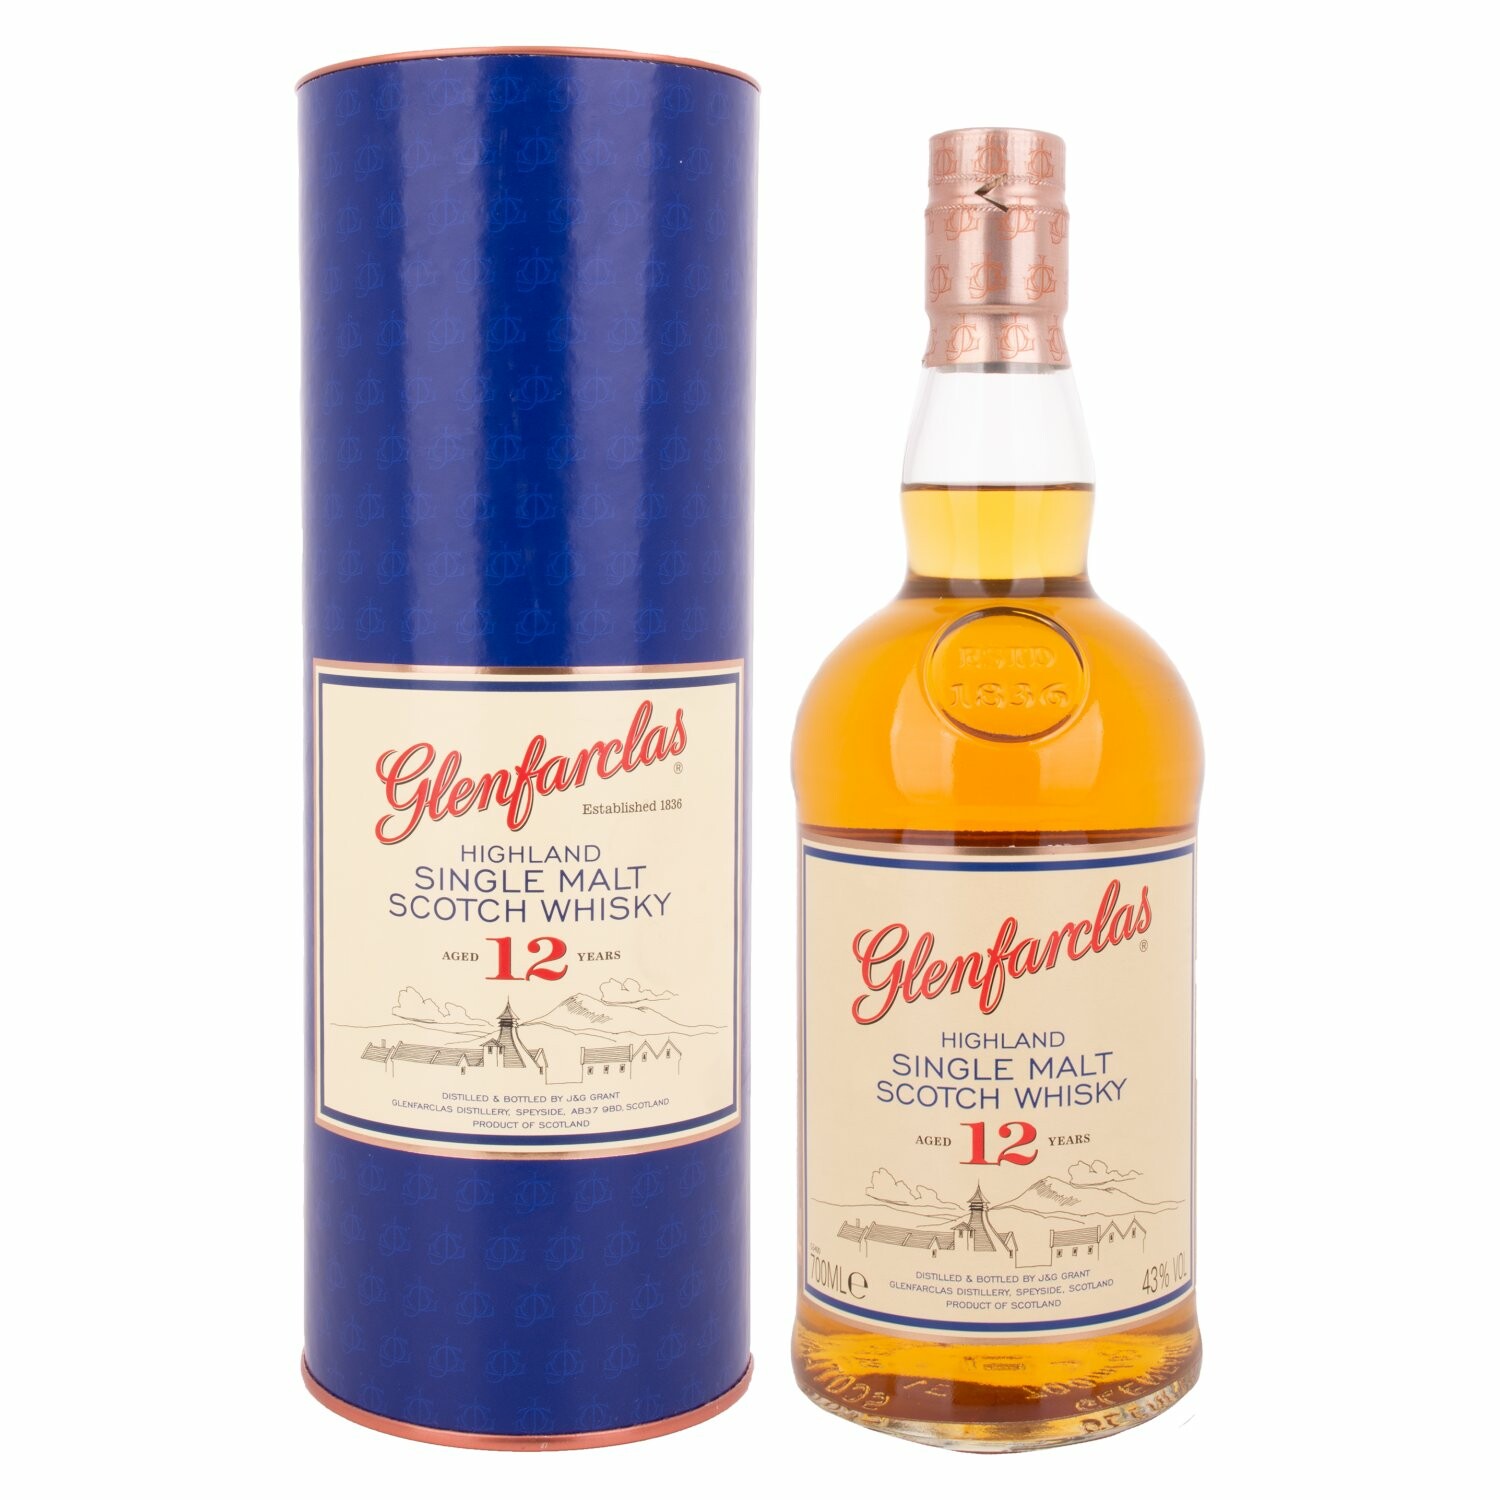 Glenfarclas 12 Years Old Highland Single Malt Scotch Whisky 43% Vol. 0,7l in Giftbox